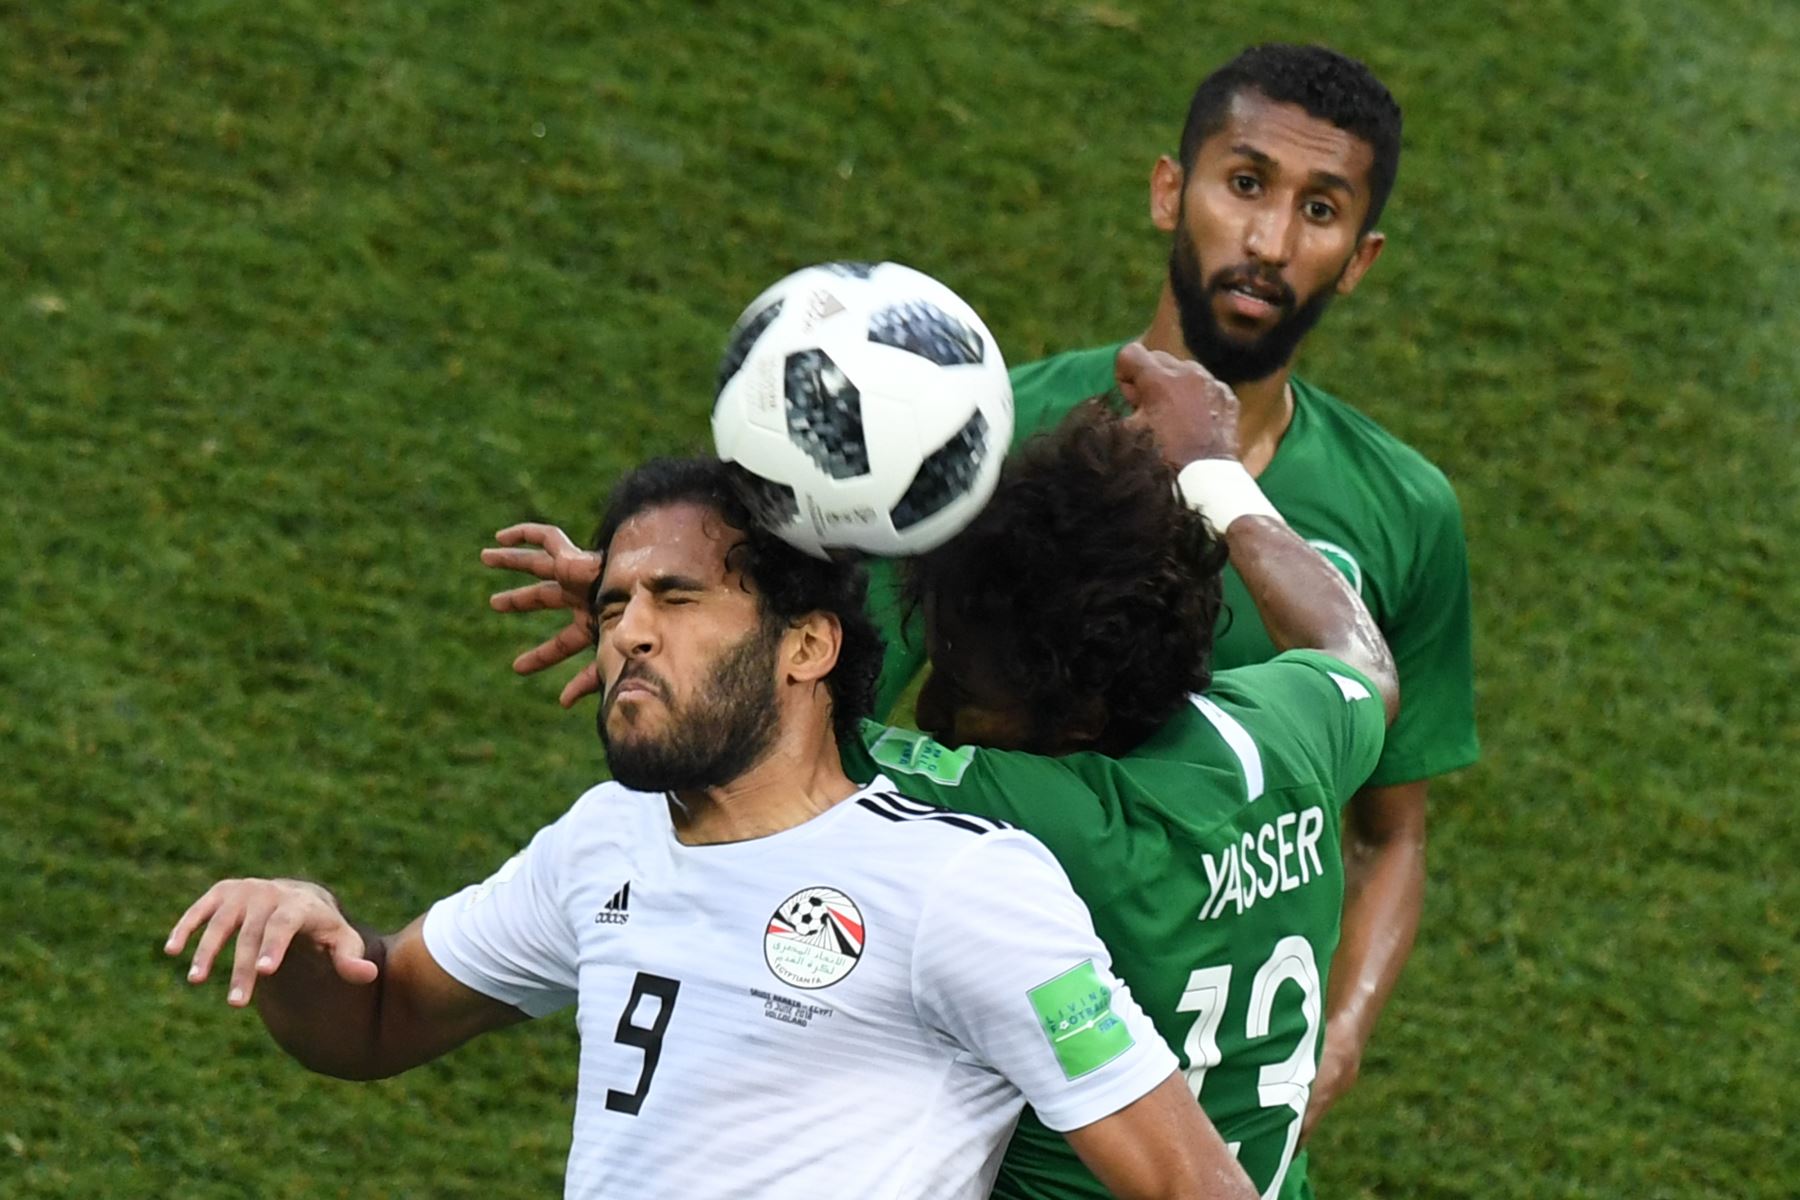 El delantero de Egipto Marwan Mohsen (L) compite por el cabezazo con el defensor de Arabia Saudita Yasser Al-Shahrani (C) durante el partido de fútbol del Grupo A de la Copa Mundial Rusia 2018 entre Arabia Saudita y Egipto en el Volgograd Arena de Volgogrado el 25 de junio de 2018. / AFP